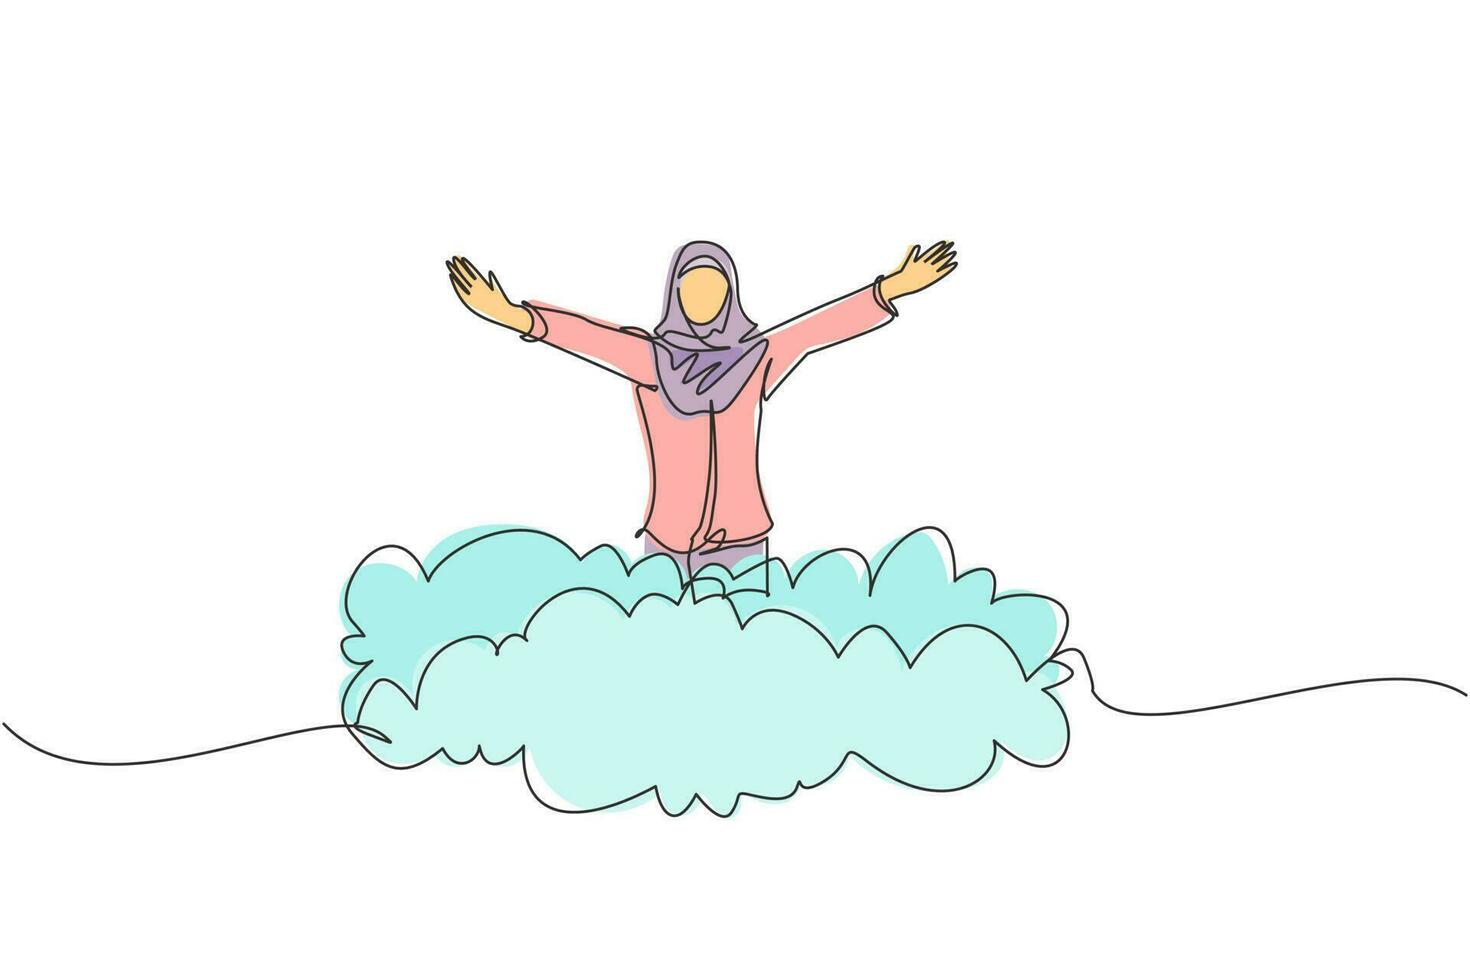 única empresária árabe de desenho de uma linha em cima da nuvem com as mãos levantadas. conceito de negócio bem sucedido. liberdade financeira, felicidade, paz. ilustração em vetor gráfico de design de linha contínua